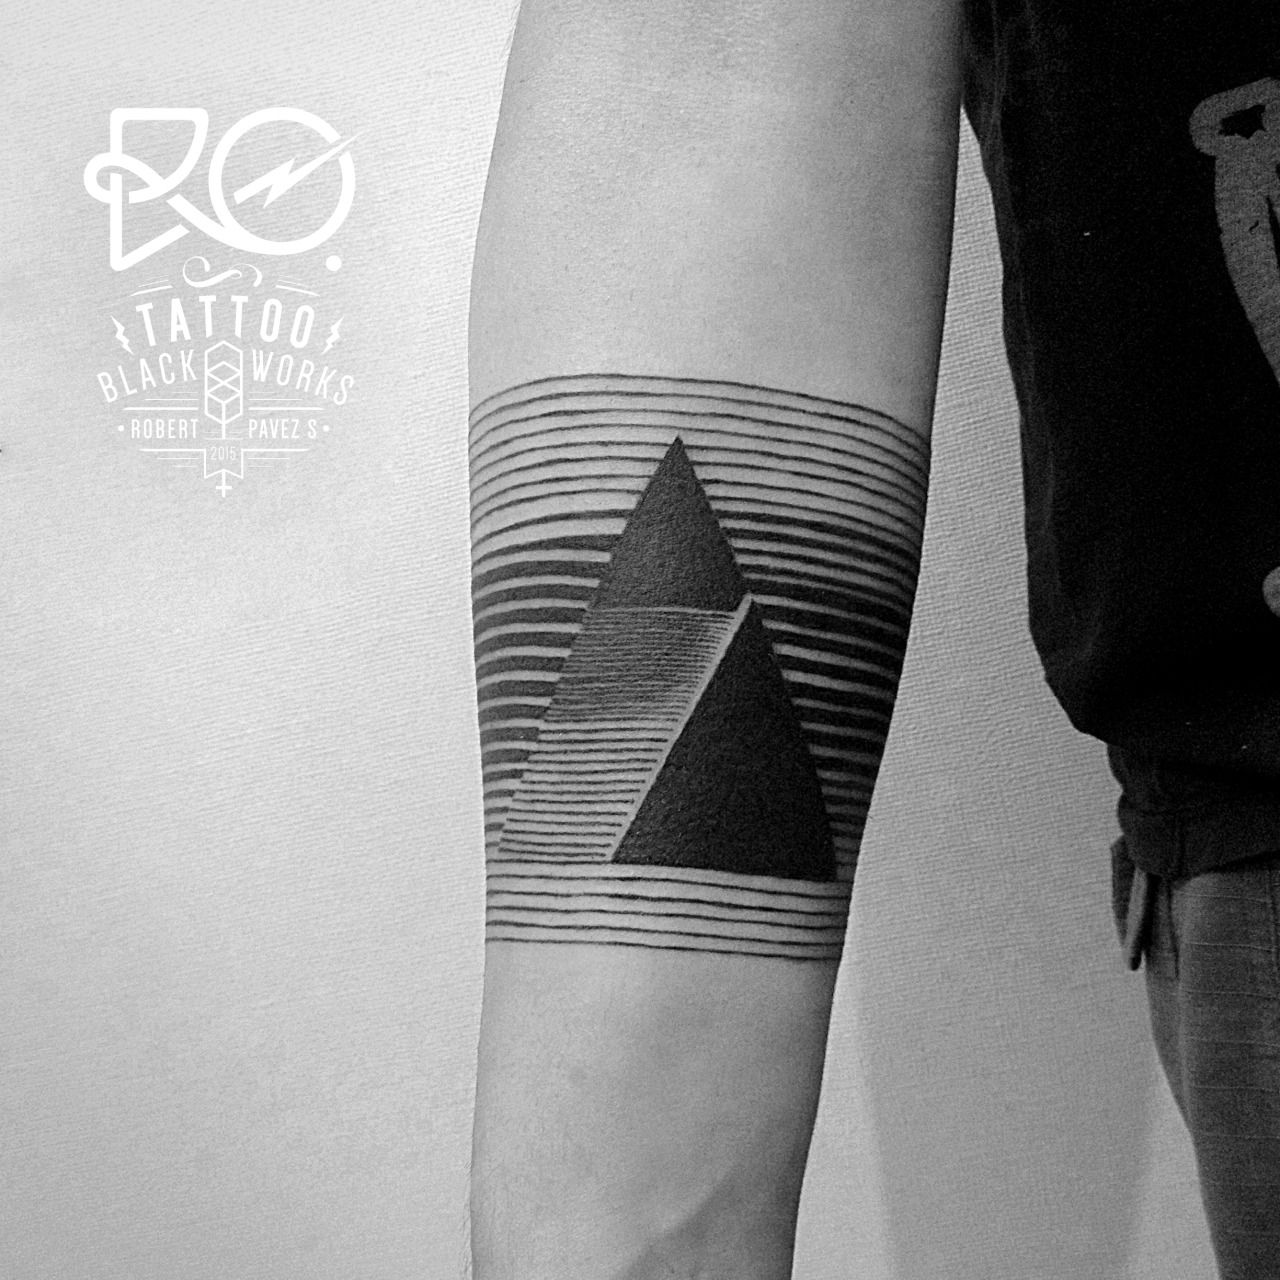 55 Best Geometric Tattoo Ideas